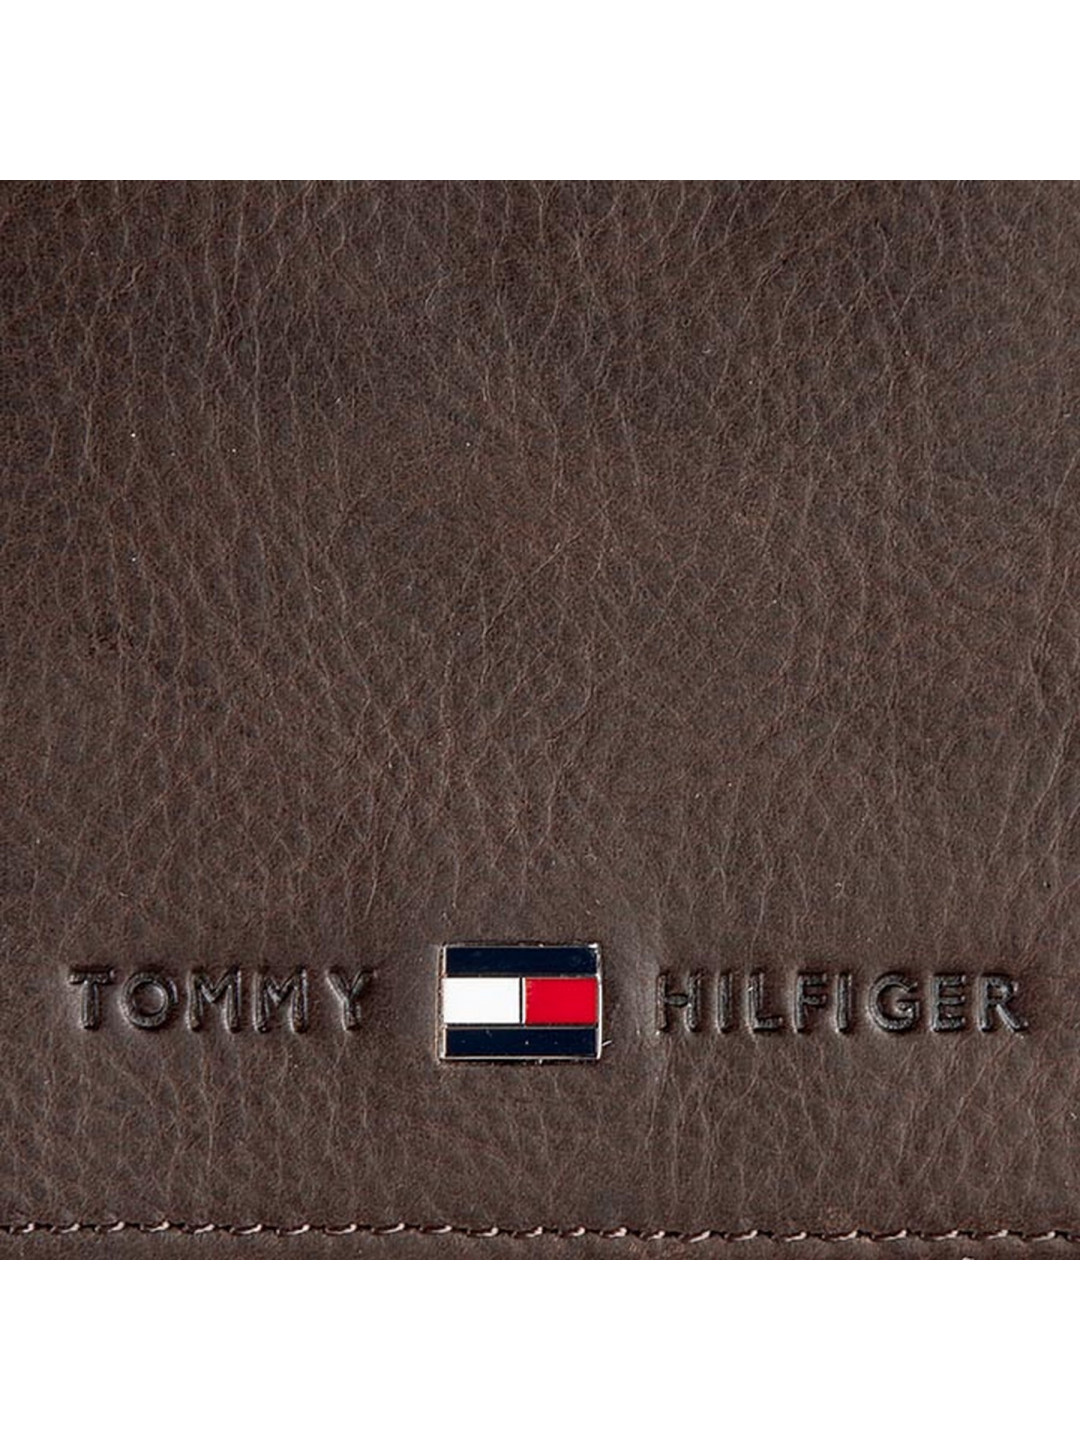 Velká pánská peněženka Tommy Hilfiger